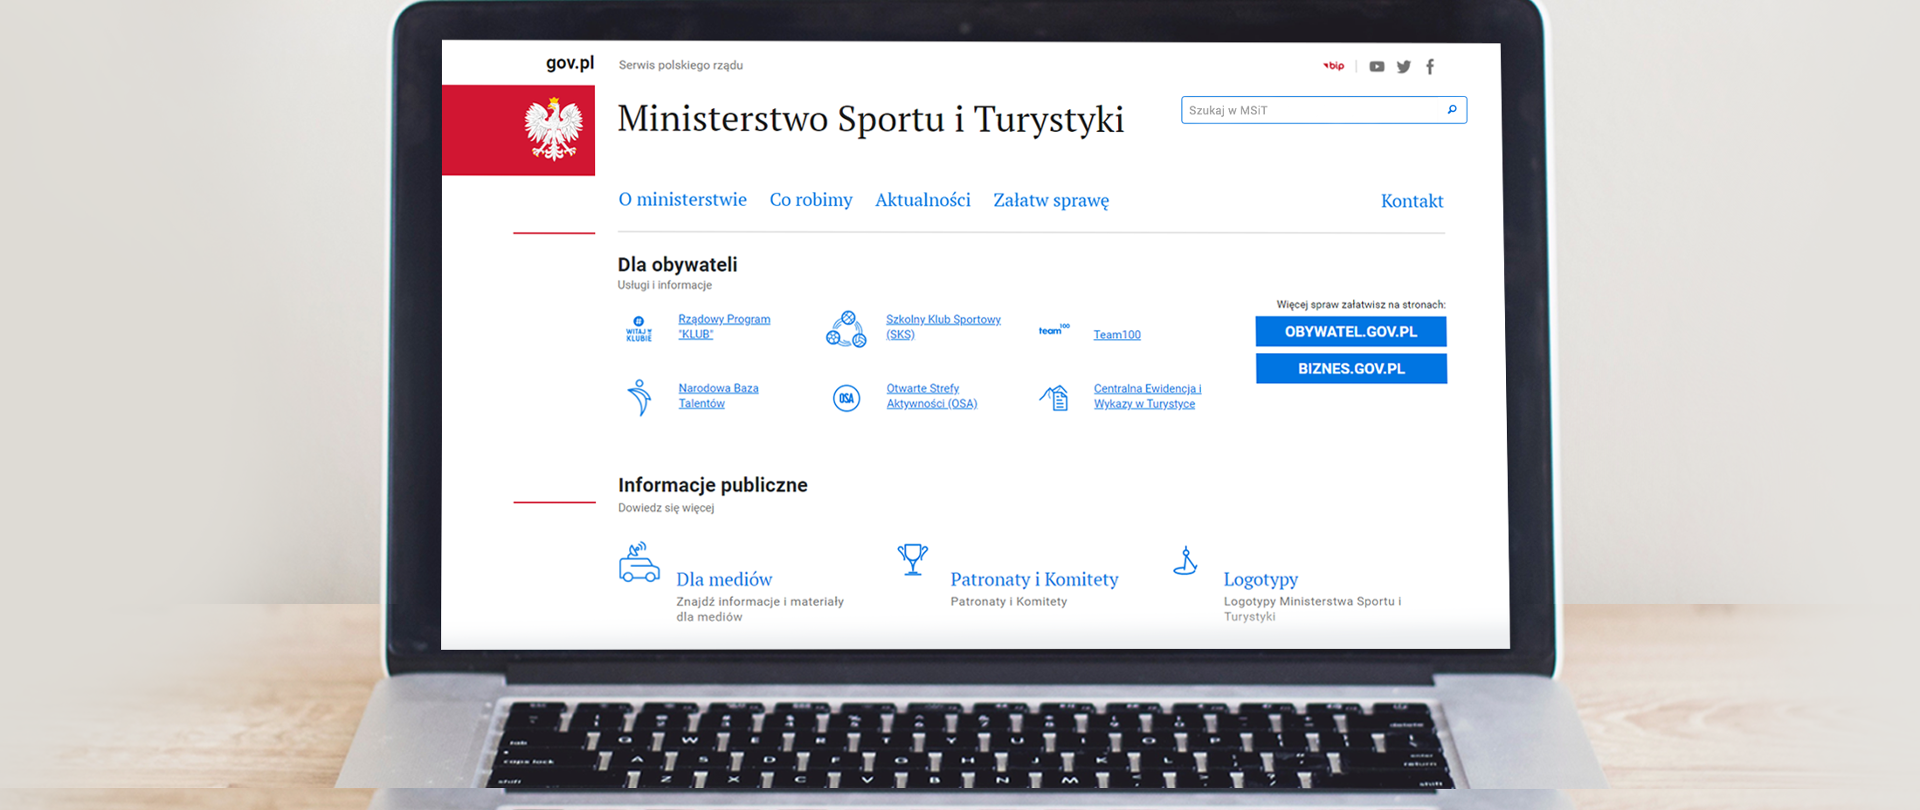 Ministerstwo Sportu i Turystyki dołączyło do portalu Gov.pl